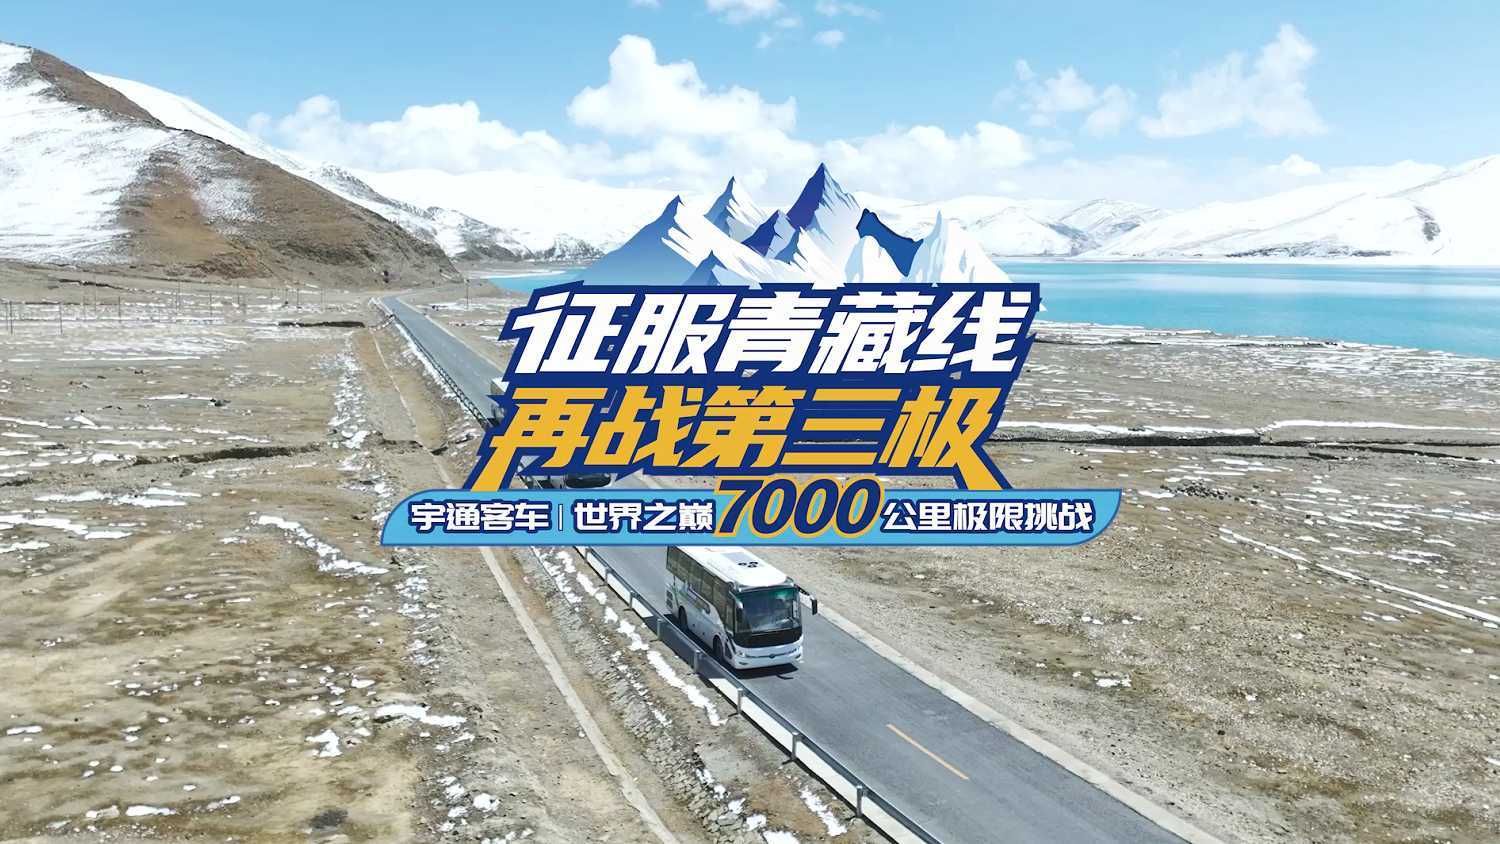 世界之巅7000公里极限挑战，以更高的品质、更快的服务、更强的性能，再攀世界屋脊